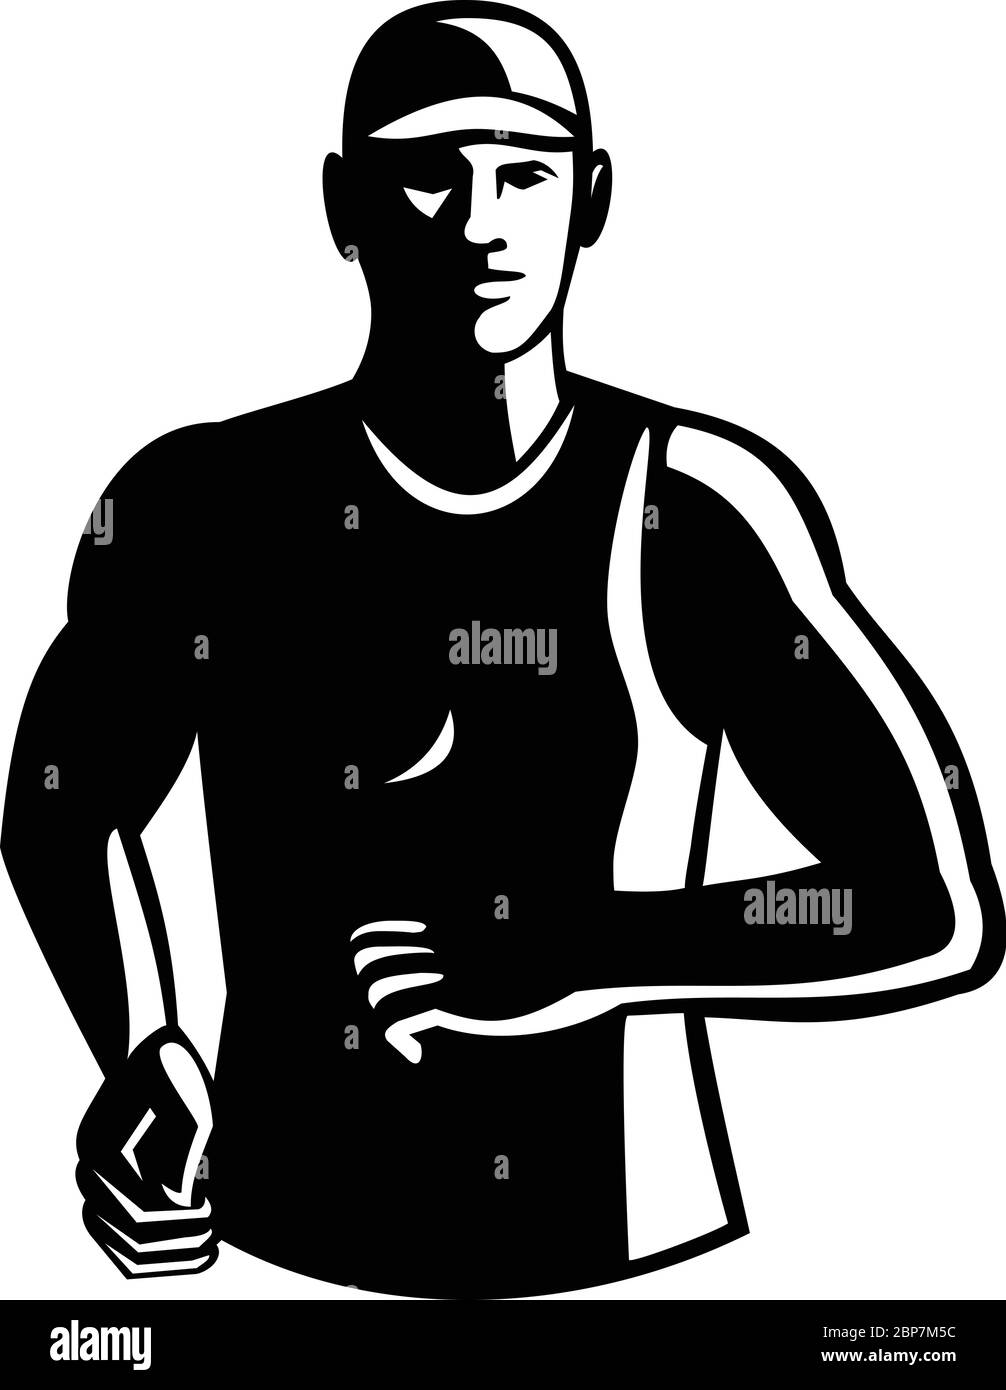 Schwarz-Weiß Illustration eines männlichen Athleten Marathon Läufer mit Blick auf die Vorderseite Set im Retro-Stil gemacht. Stock Vektor